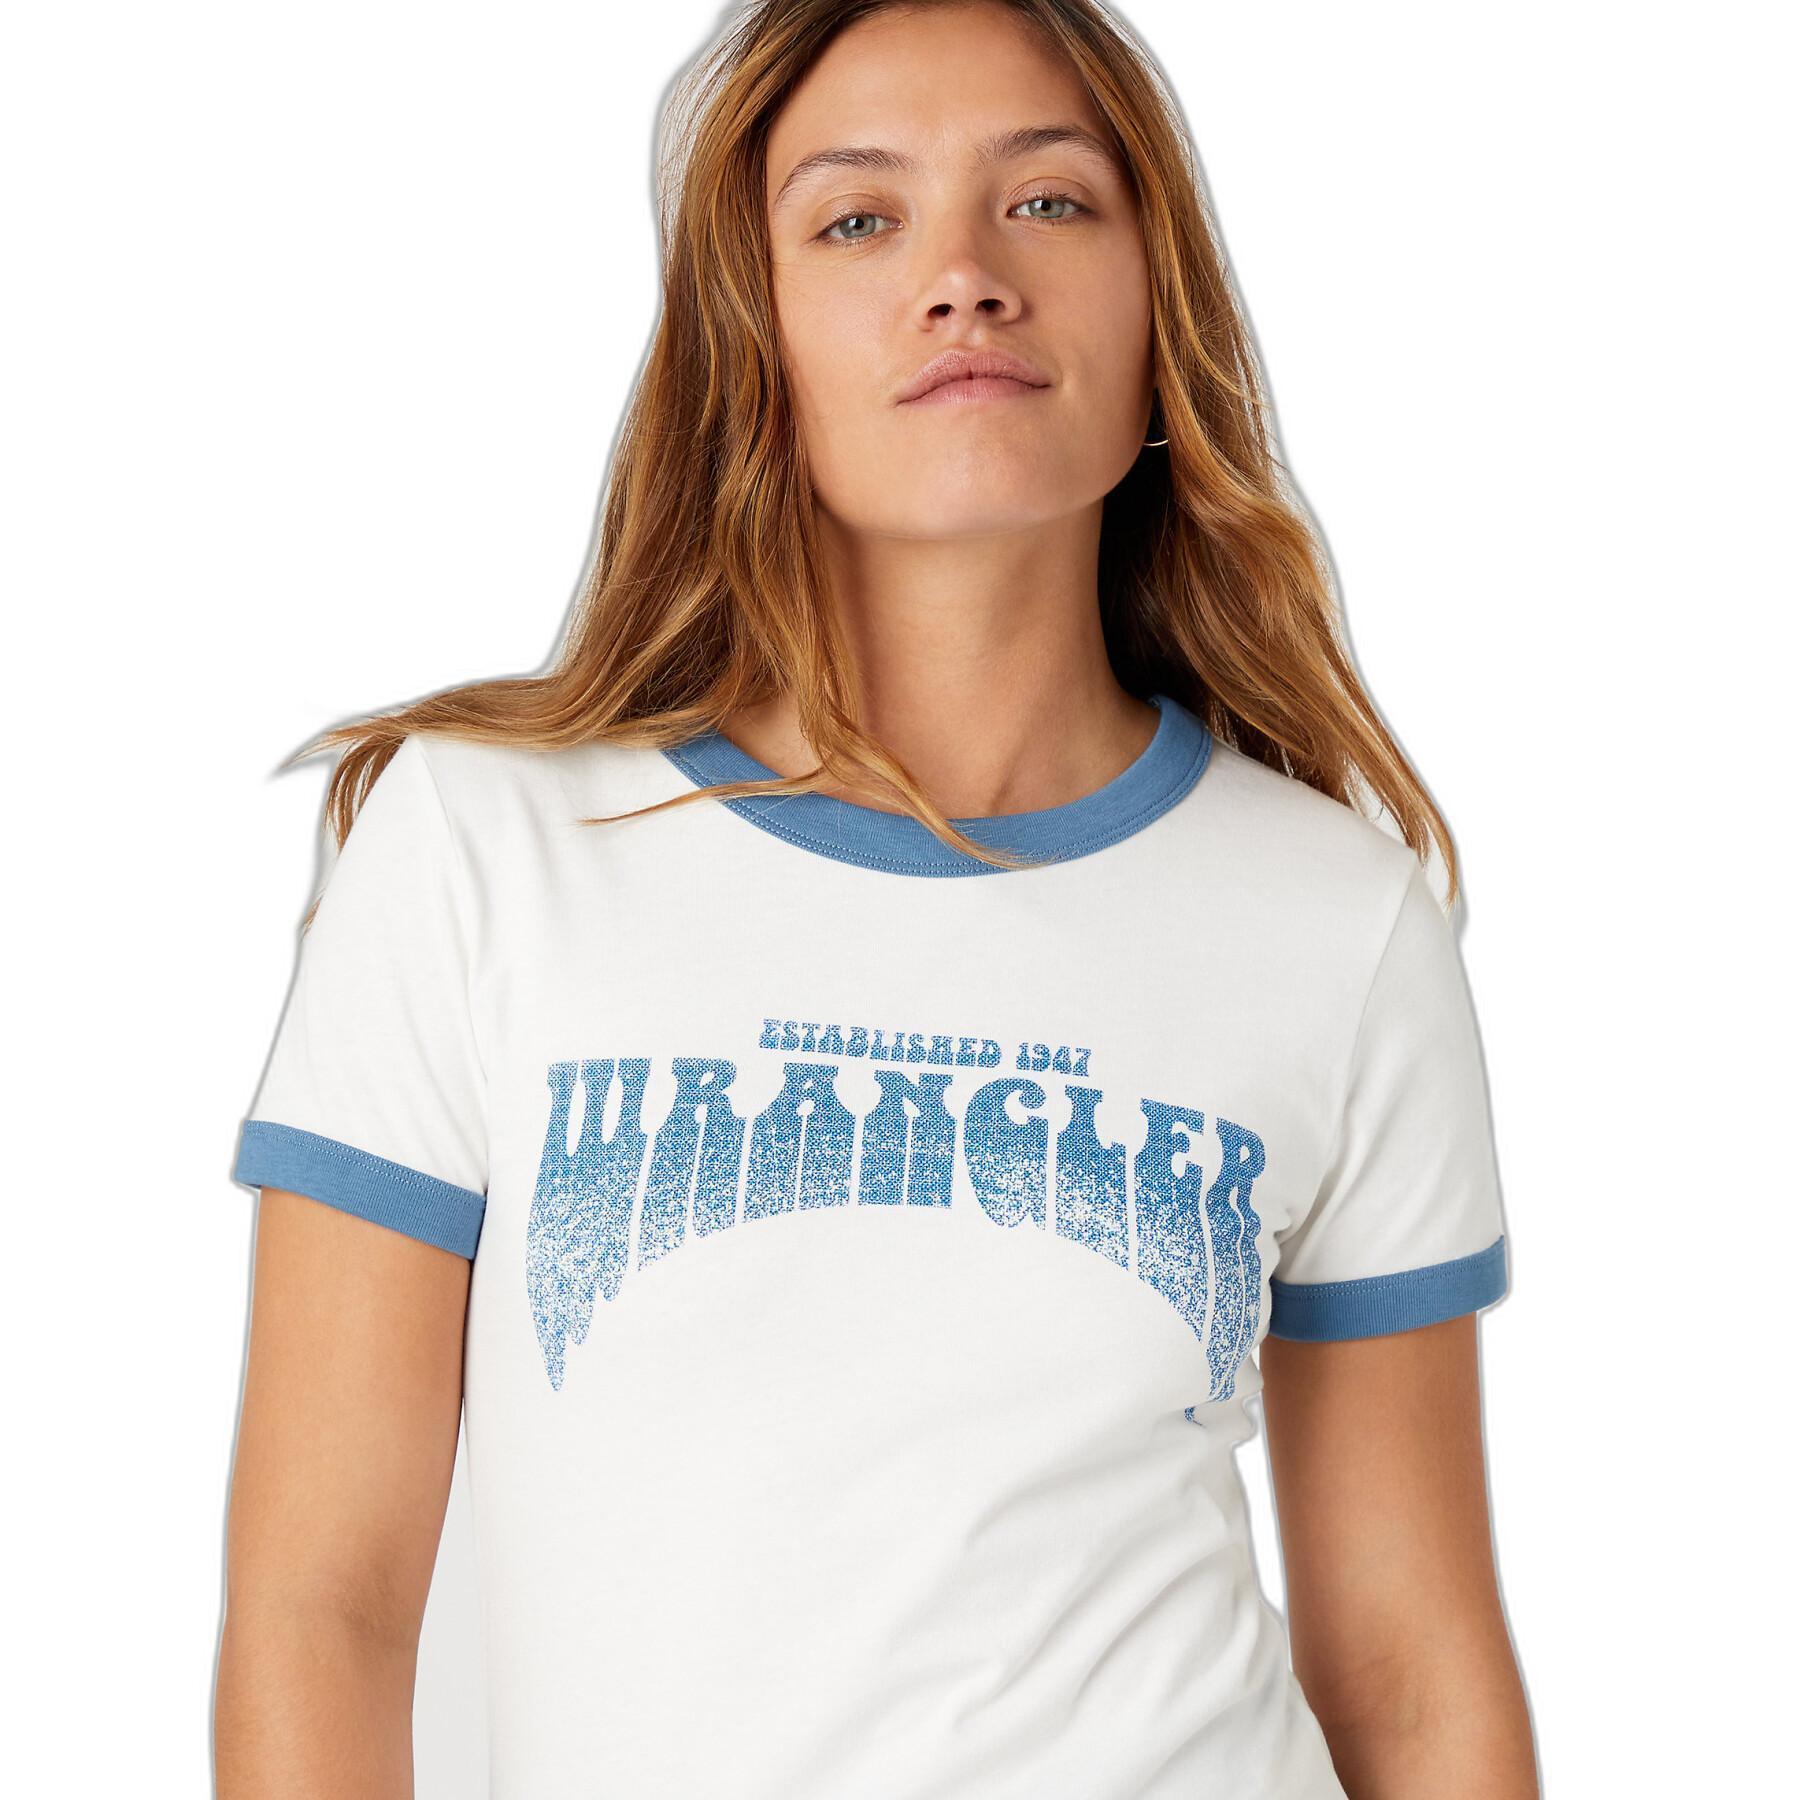 T-shirt femme Wrangler Ringer